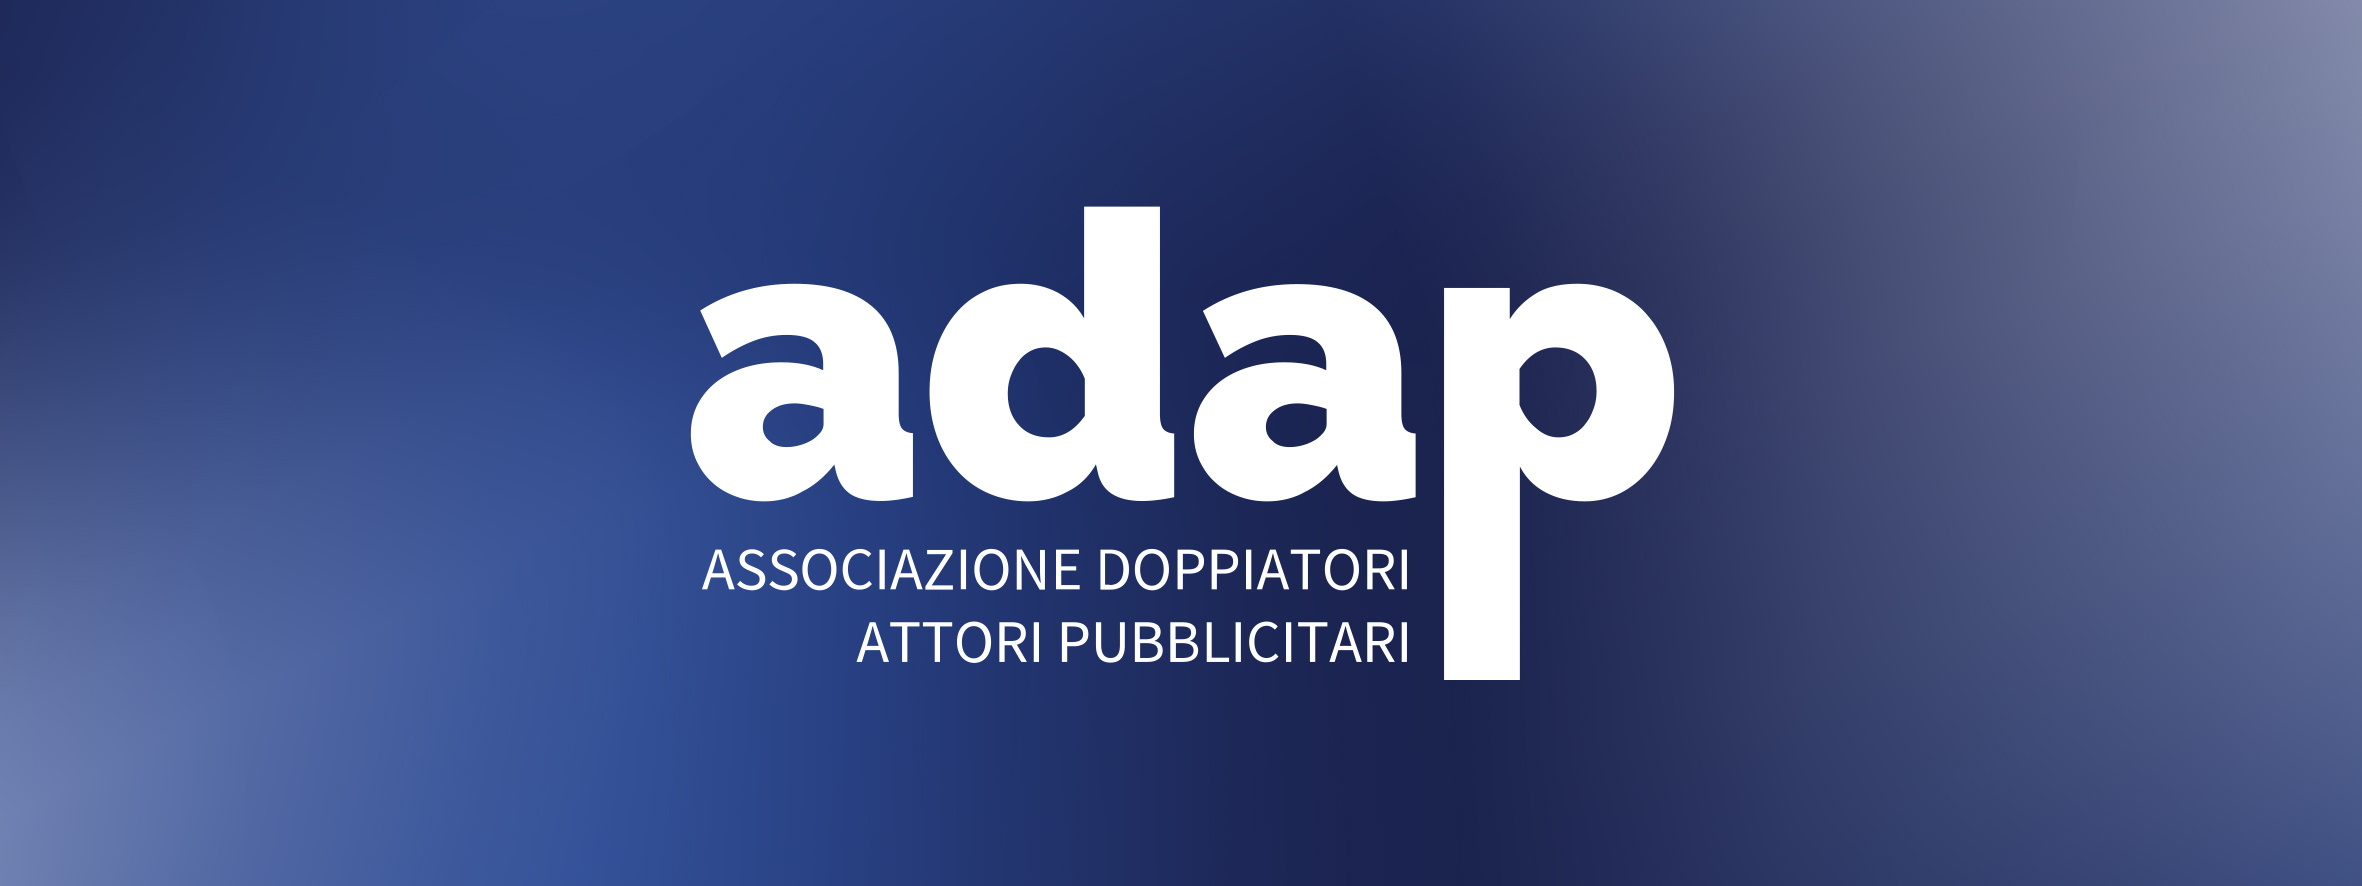 Associazione Doppiatori Attori Pubblicitari  Via Londonio, 24  - 20154  Milano  Tel/Fax:02-316574  email:segreteria@adap.it